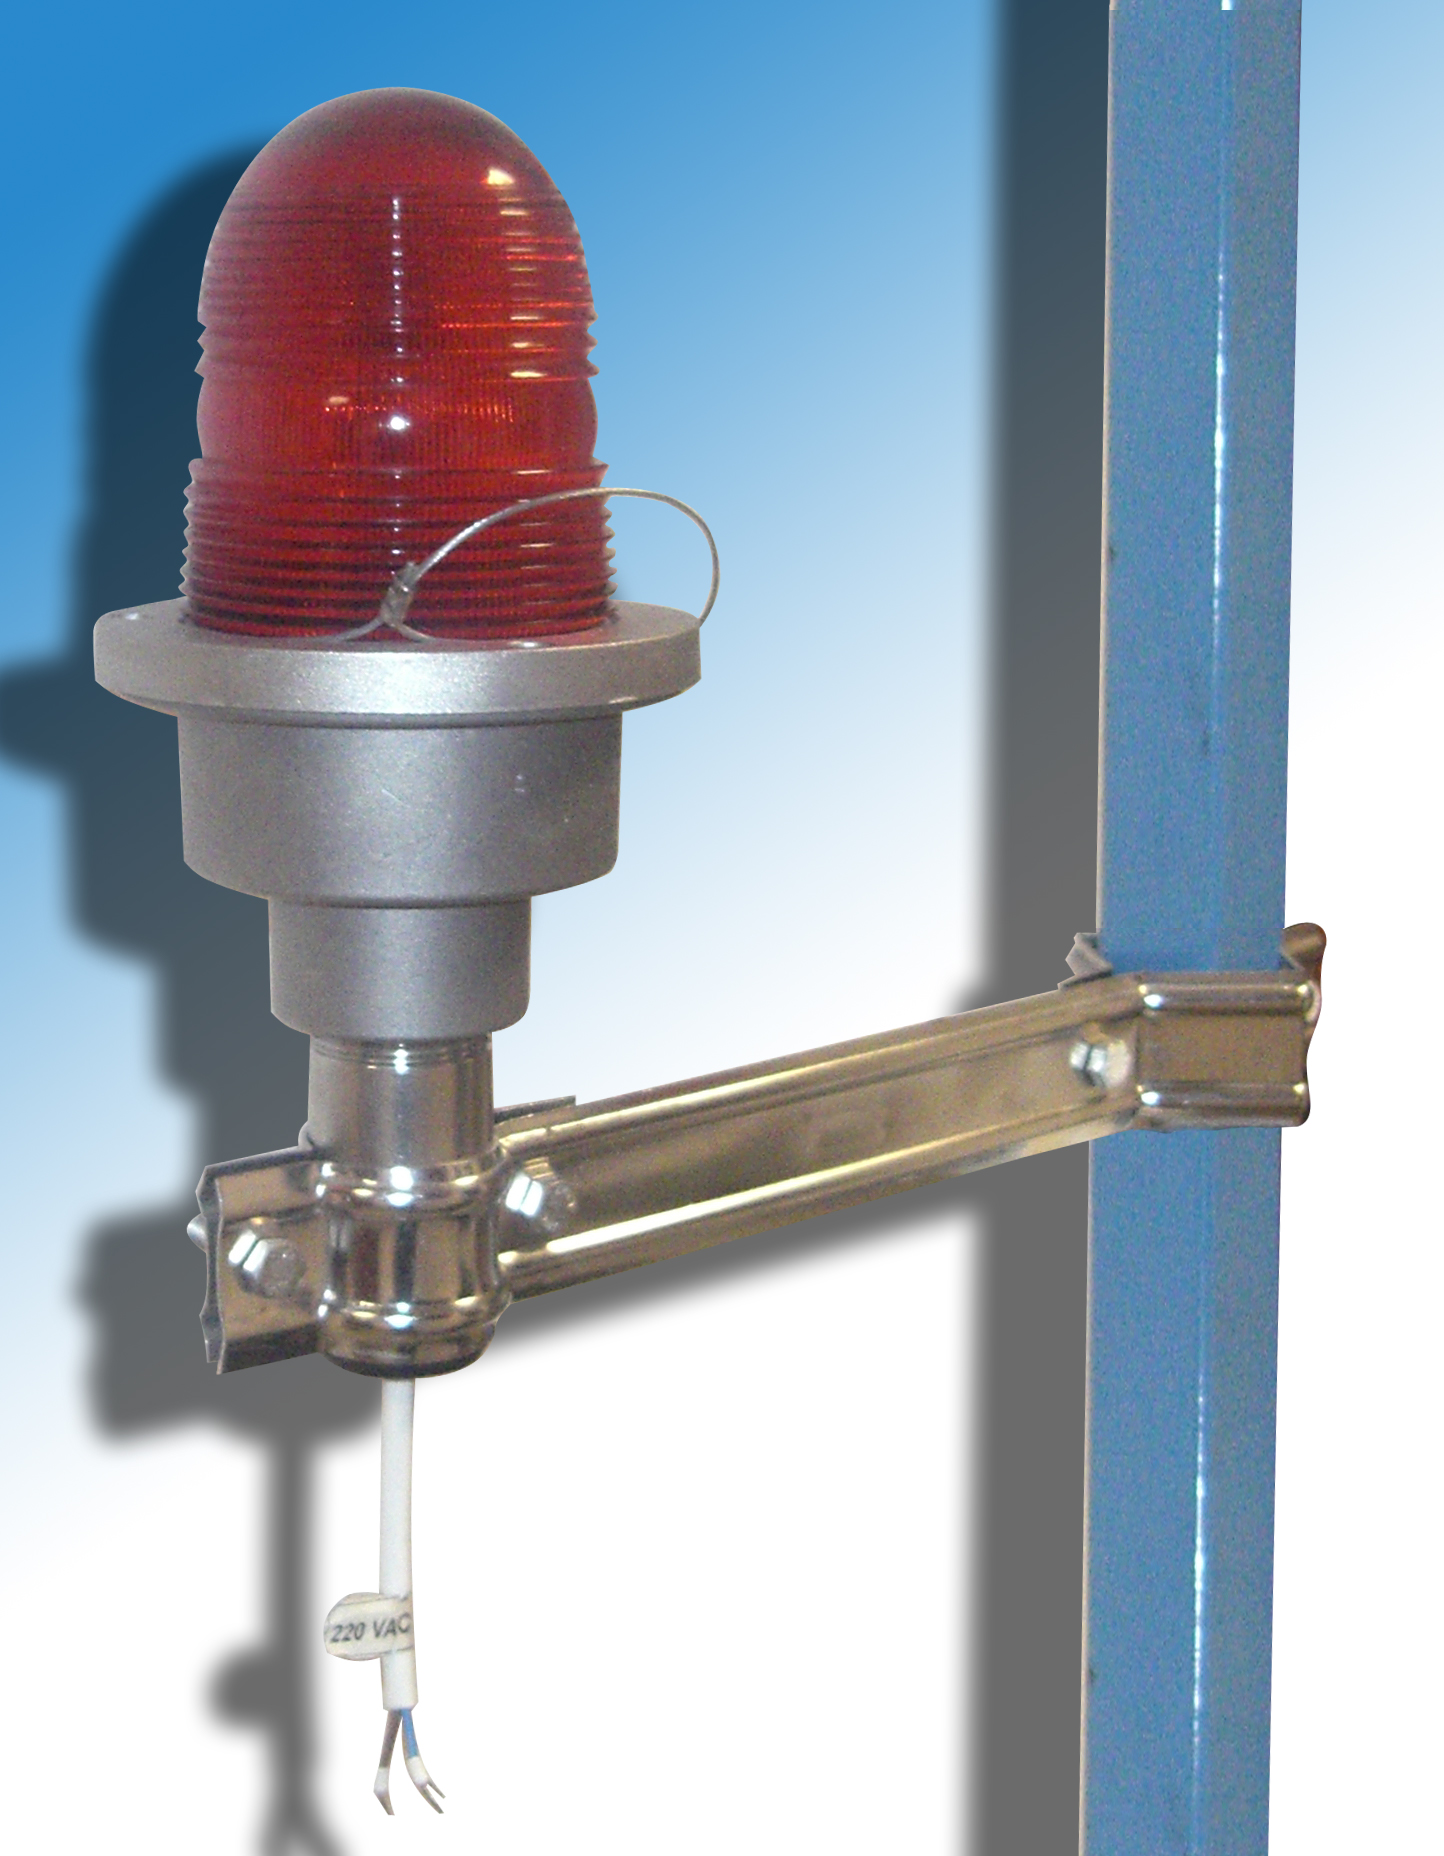 Пример установки SLB (SCHIRTEC LED BEACON) светодиодного сигнализатора